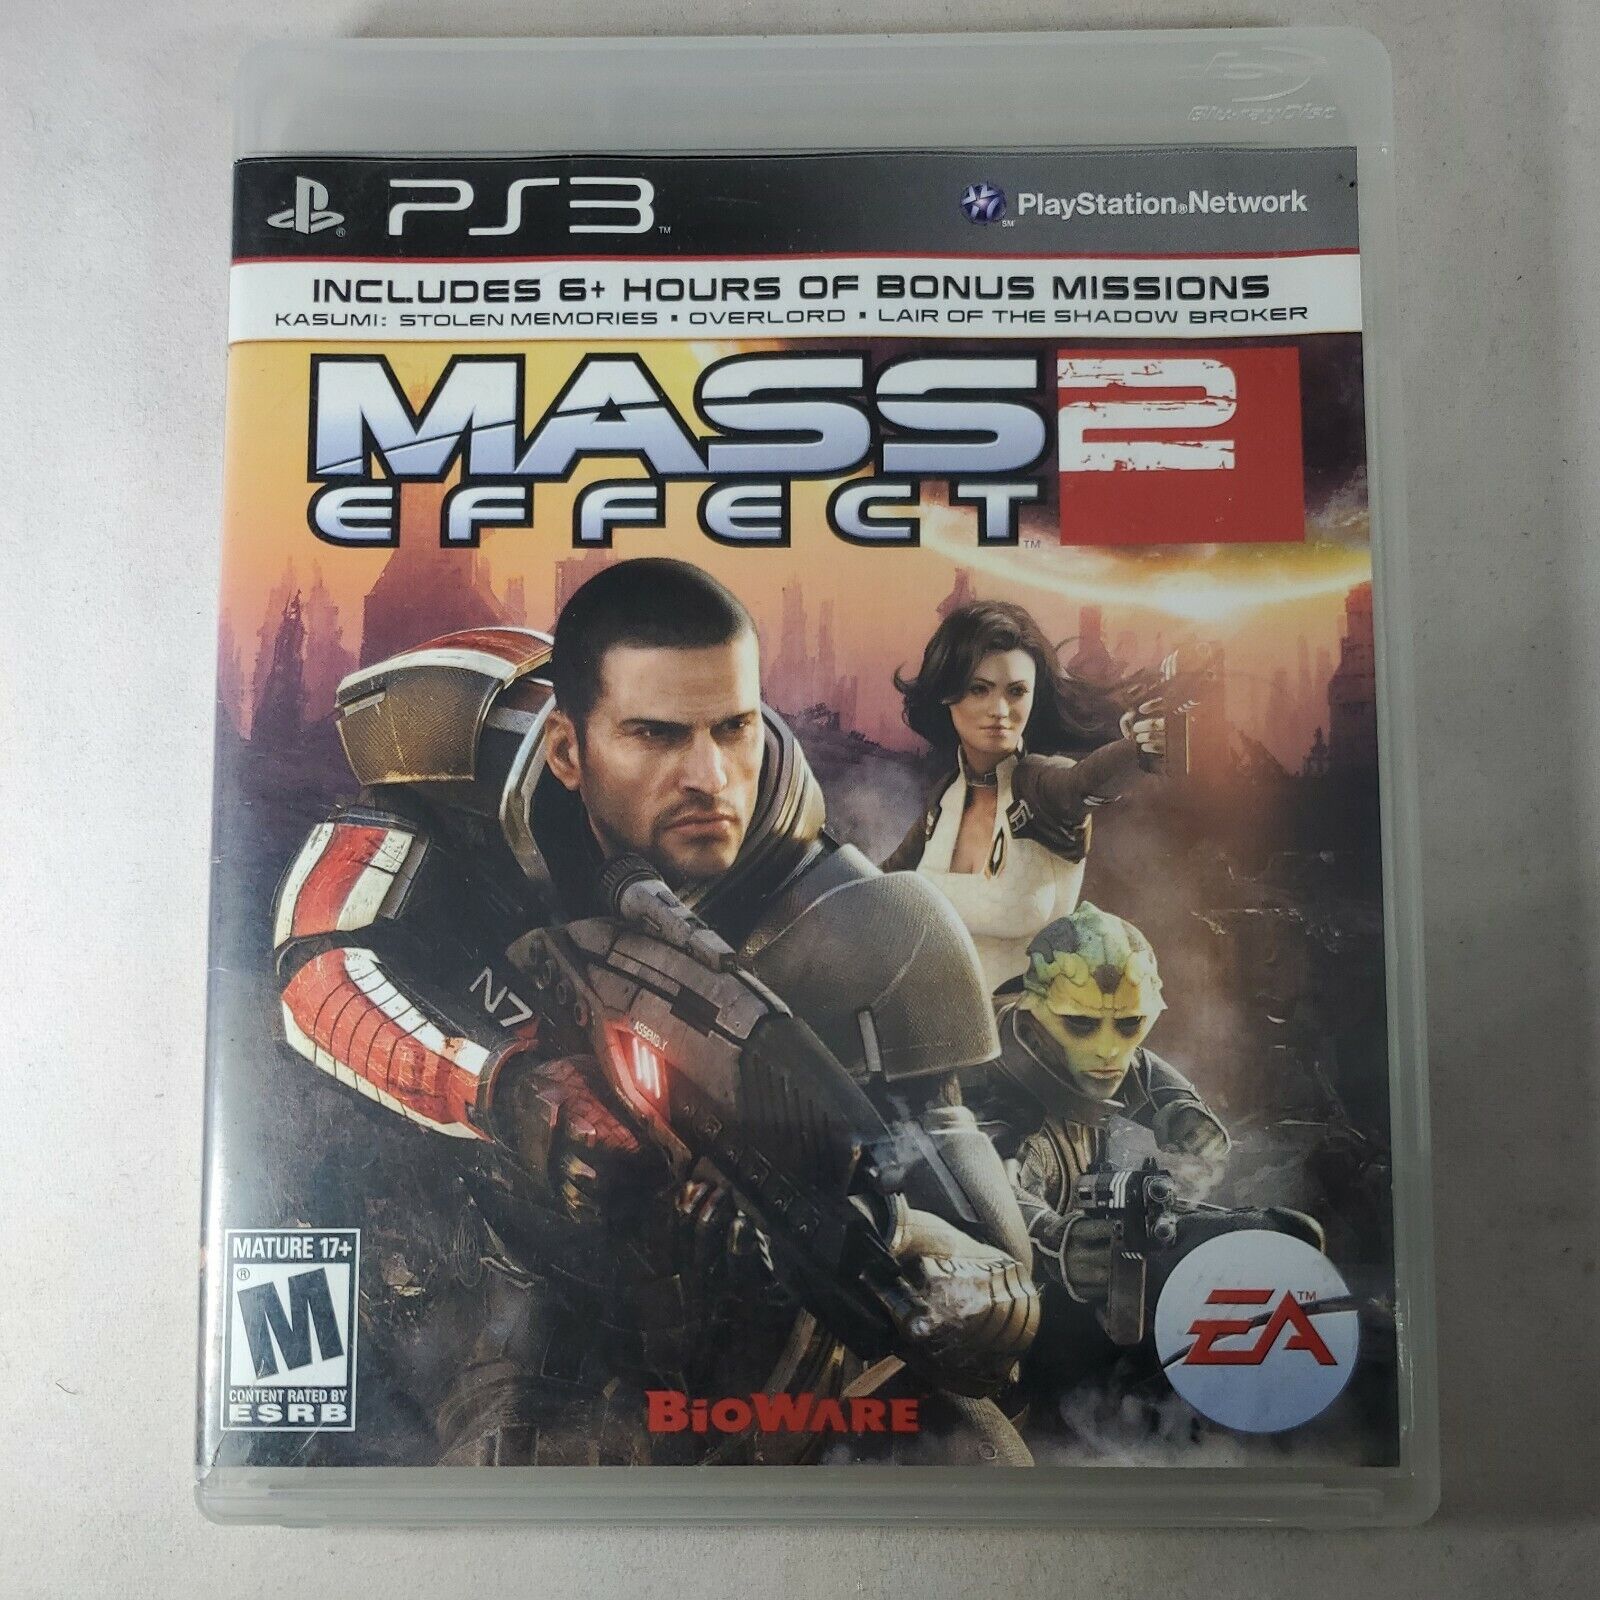 Distraer contar Odiseo Mass Effect 2 (Sony PlayStation 3 PS3) w/ DLC Bonus Missions 14633195040 |  eBay